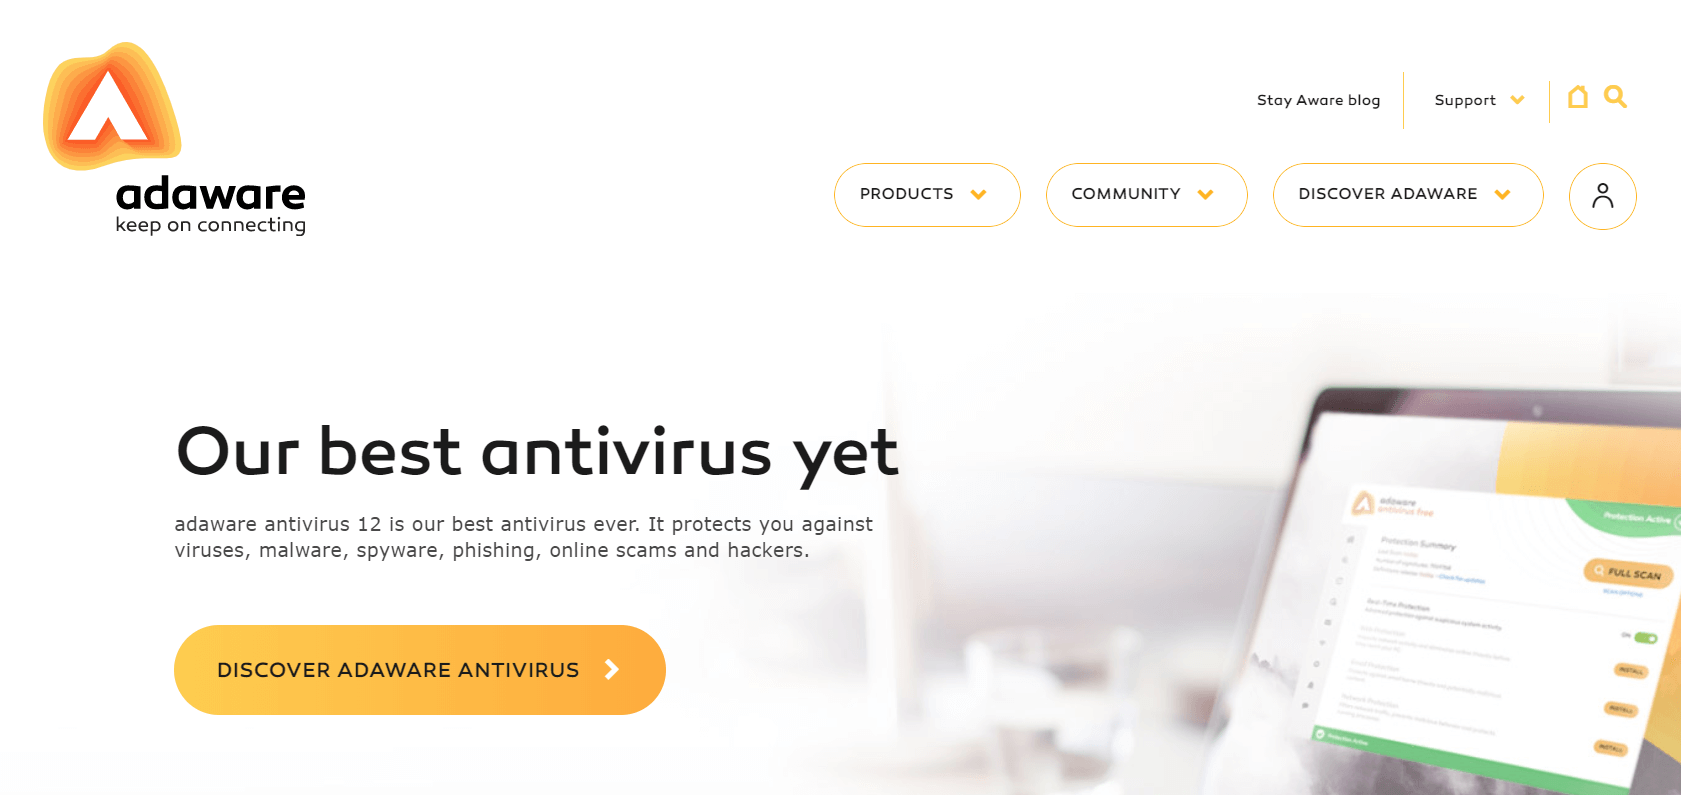 Ad-Aware Free Antivirus +